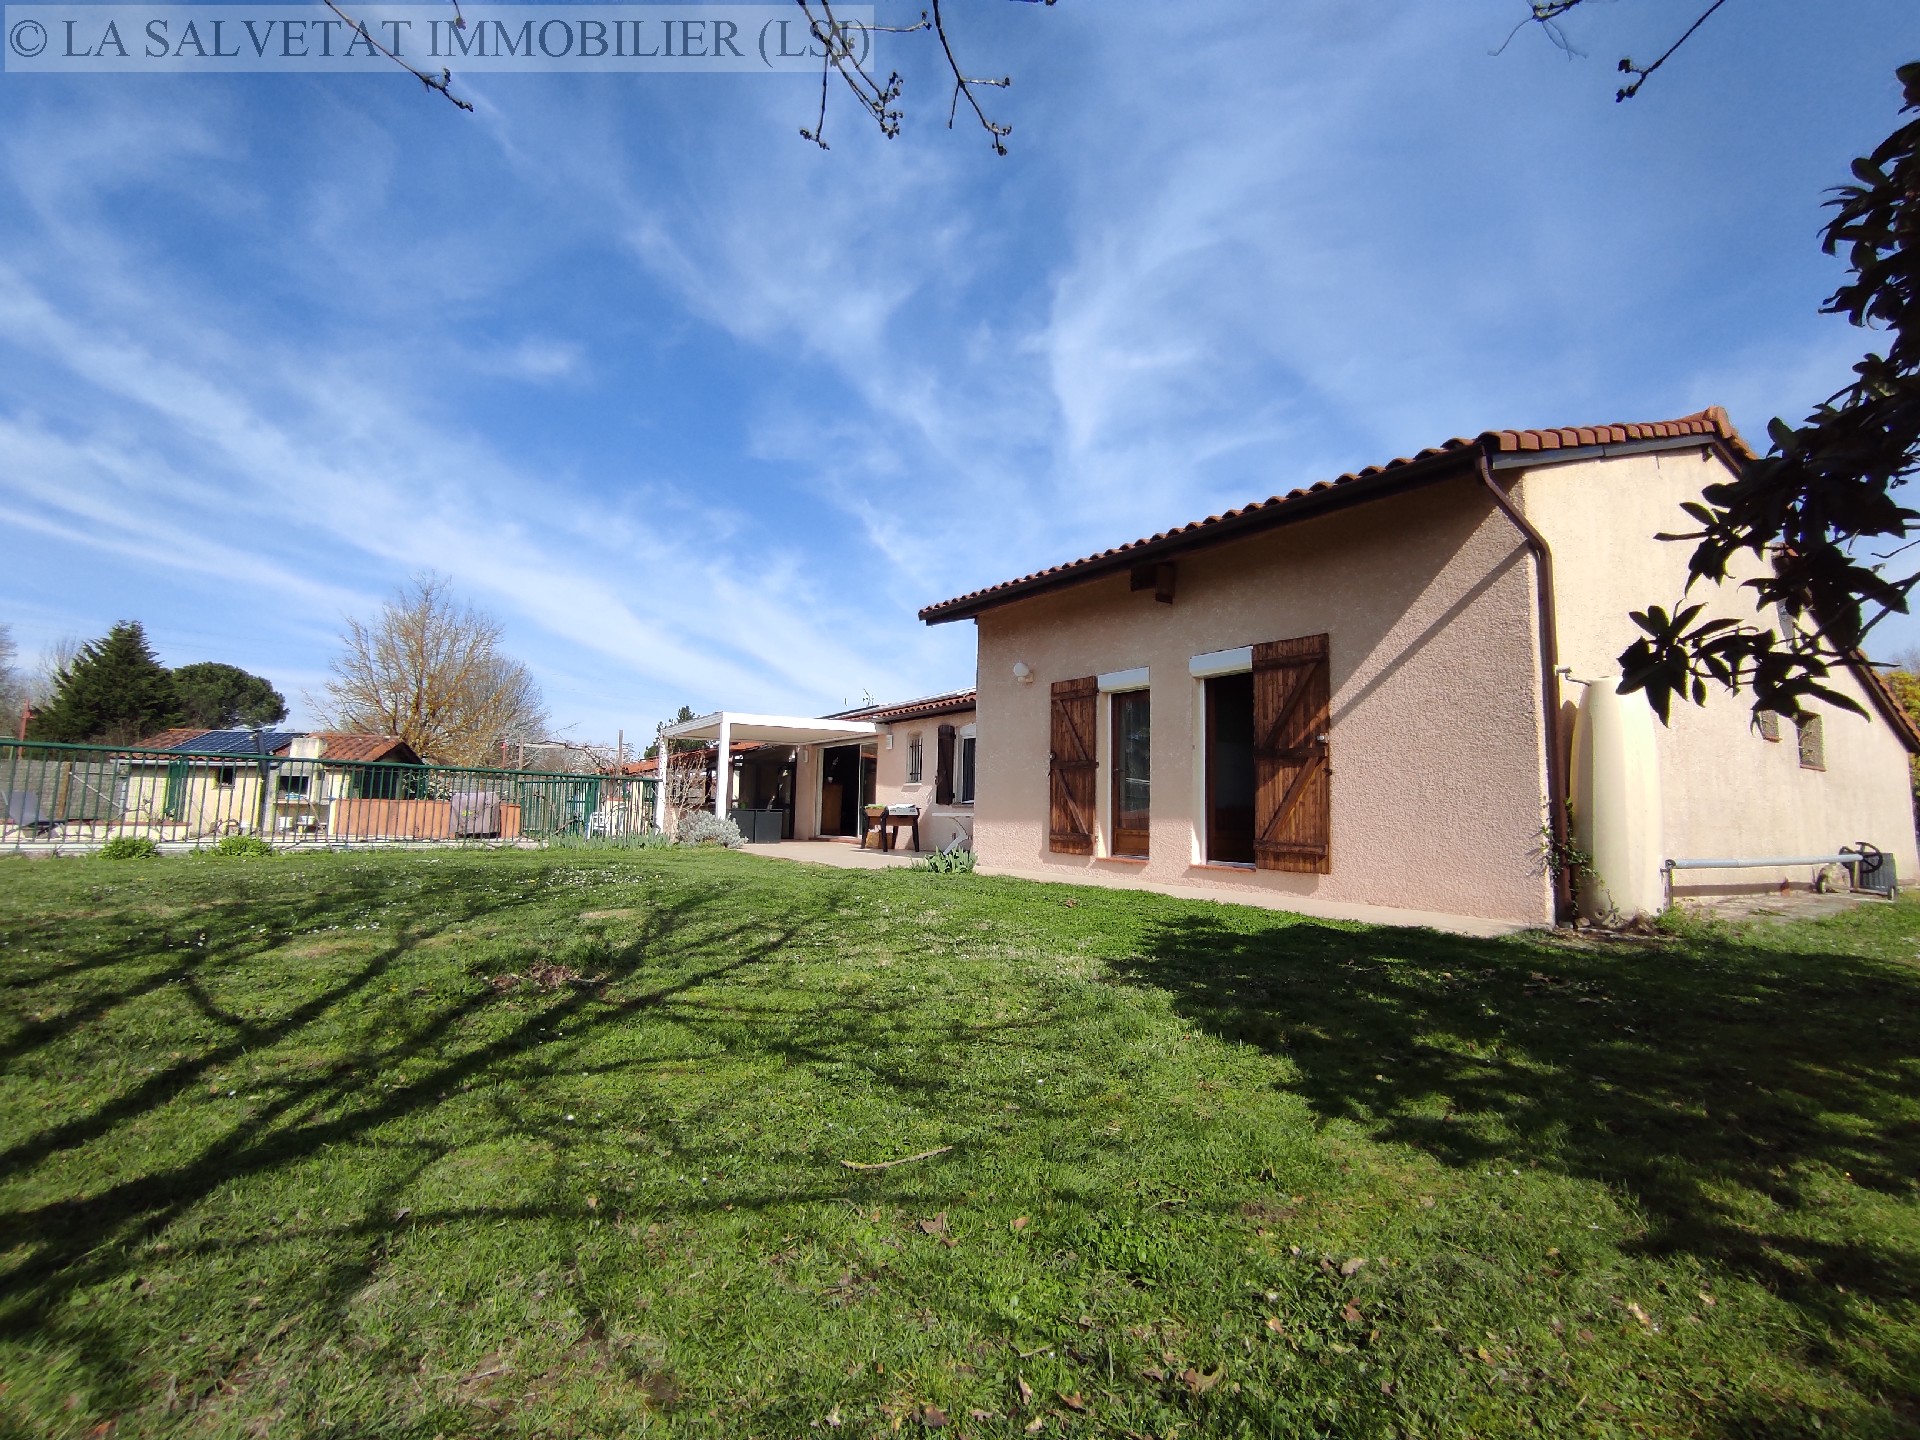 Vente maison-villa - FONTENILLES<br>168 m², 7 pièces